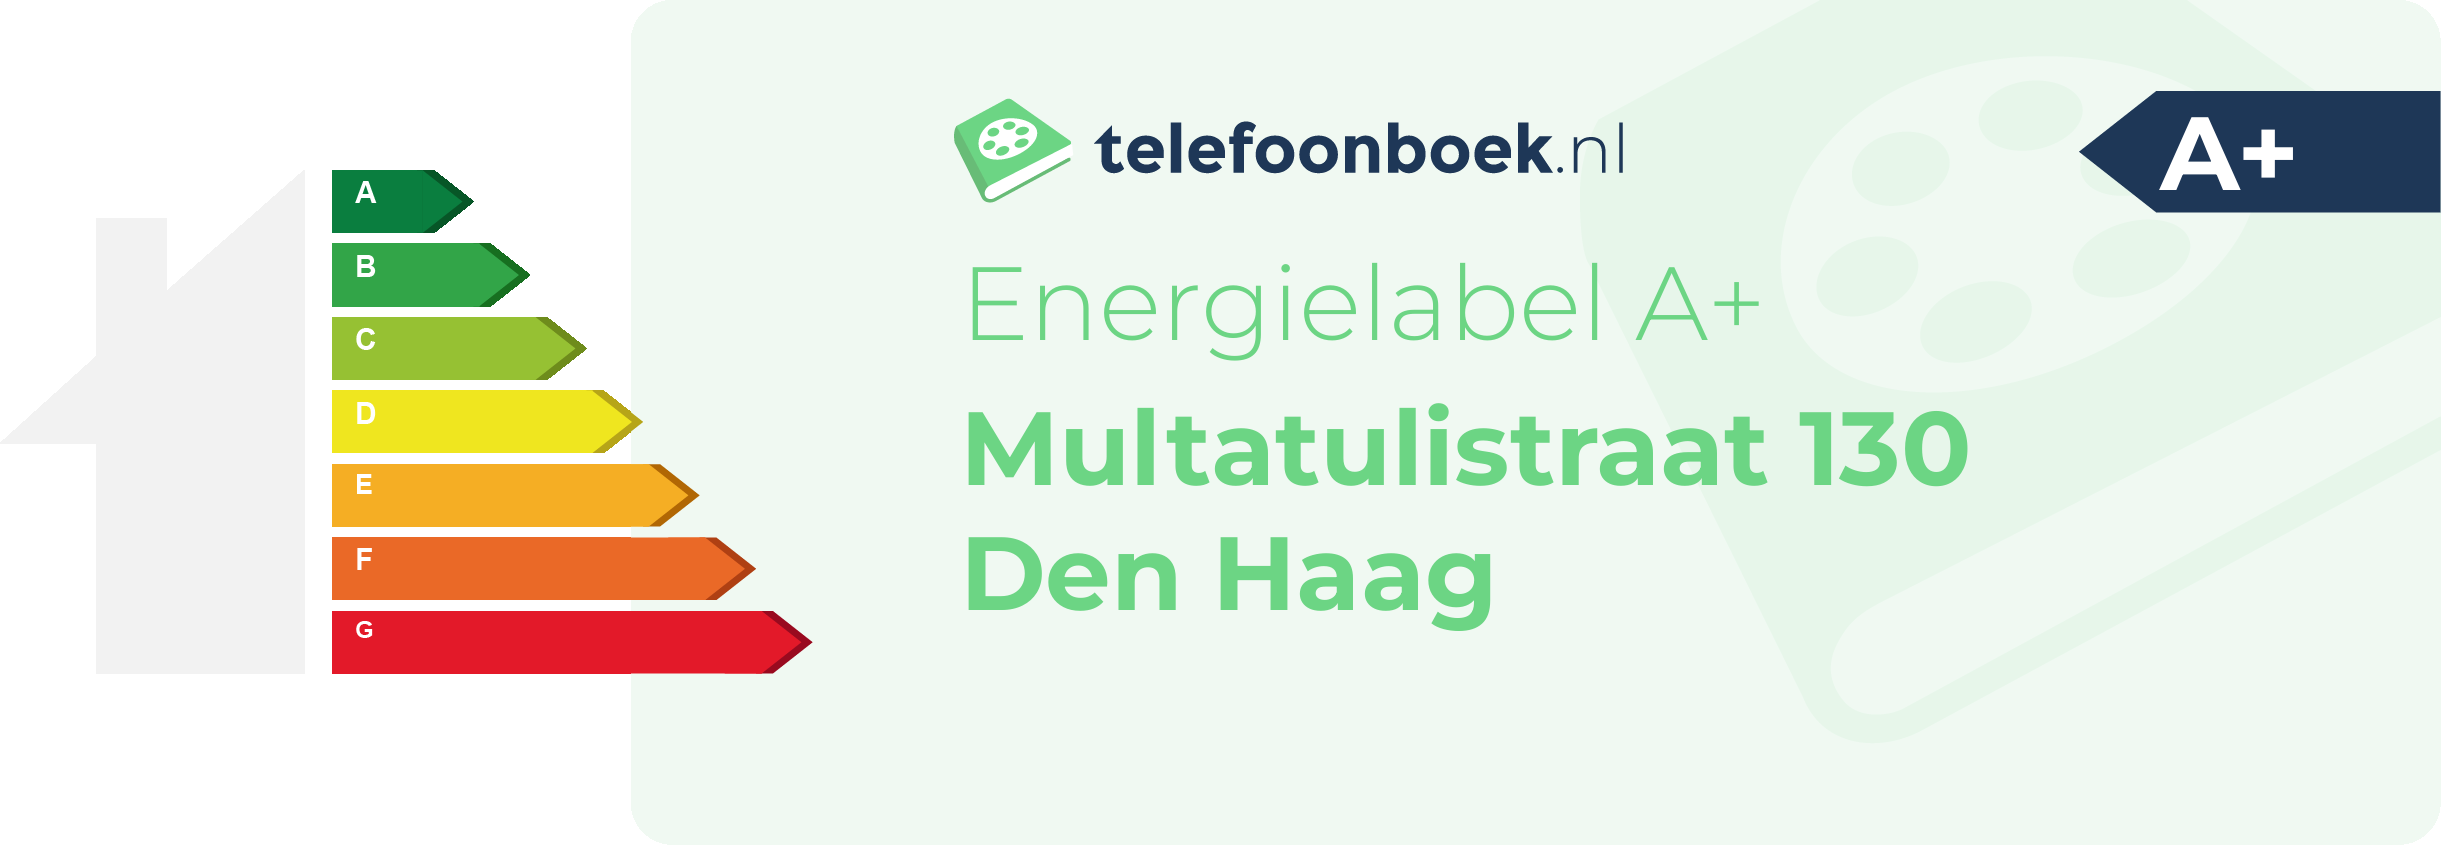 Energielabel Multatulistraat 130 Den Haag